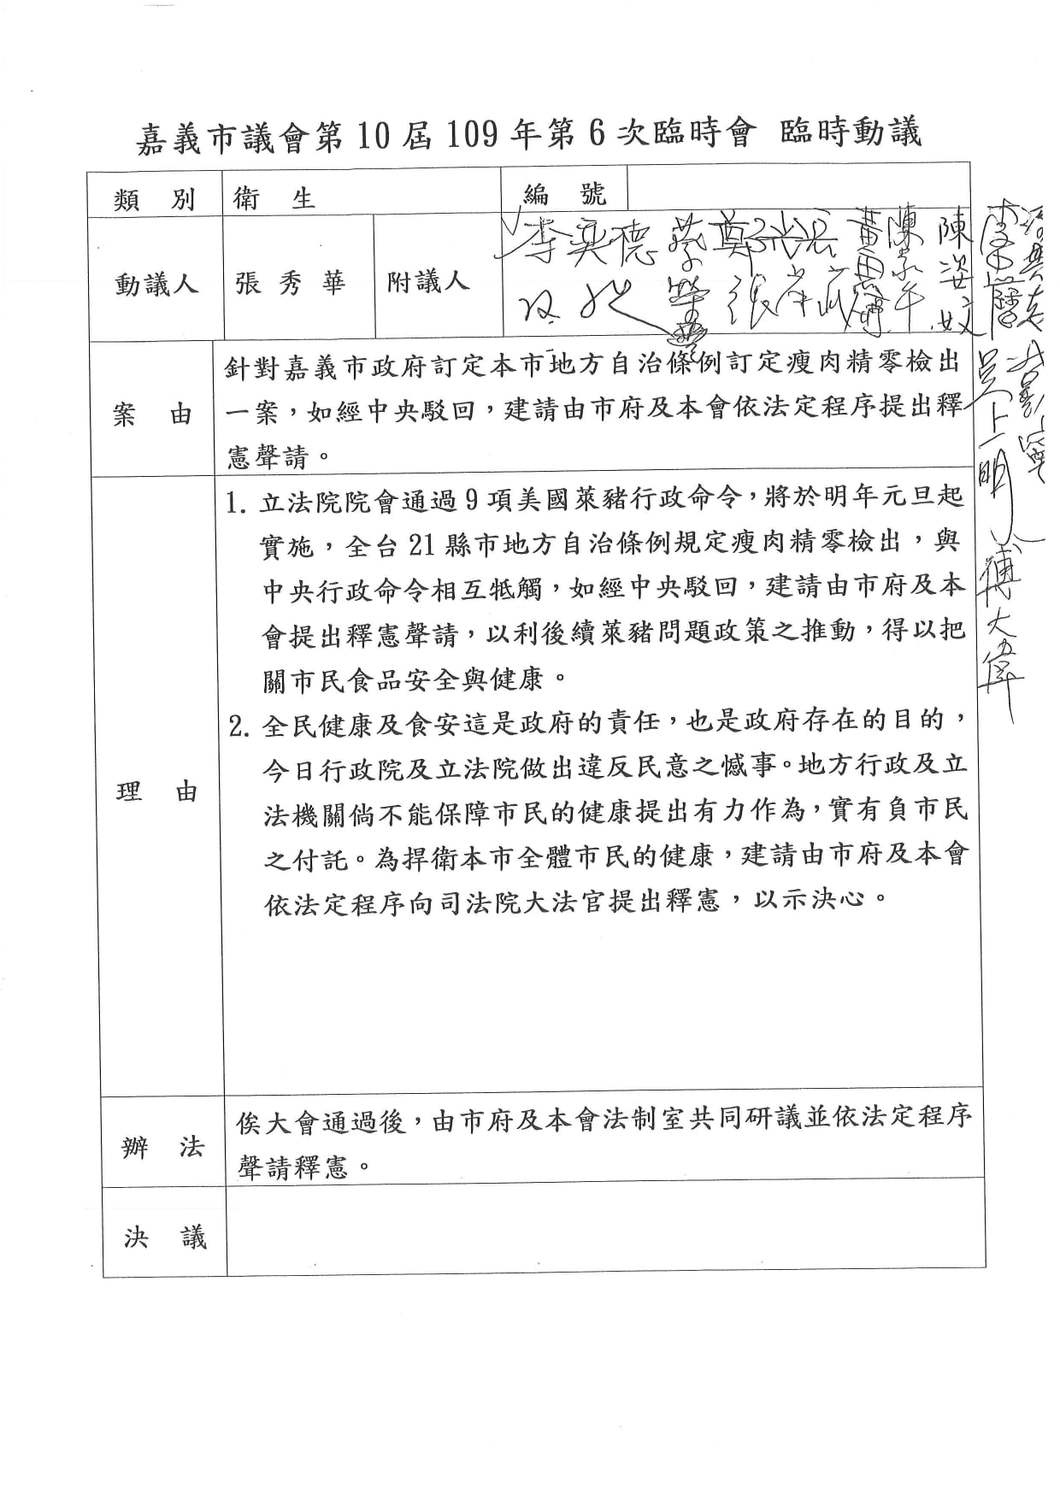 The Chiayi City Council Kuomintang Caucus, Zhang Xiuhua, proposed the constitutional interpretation Image: Taken from Zhang Xiuhua's Facebook